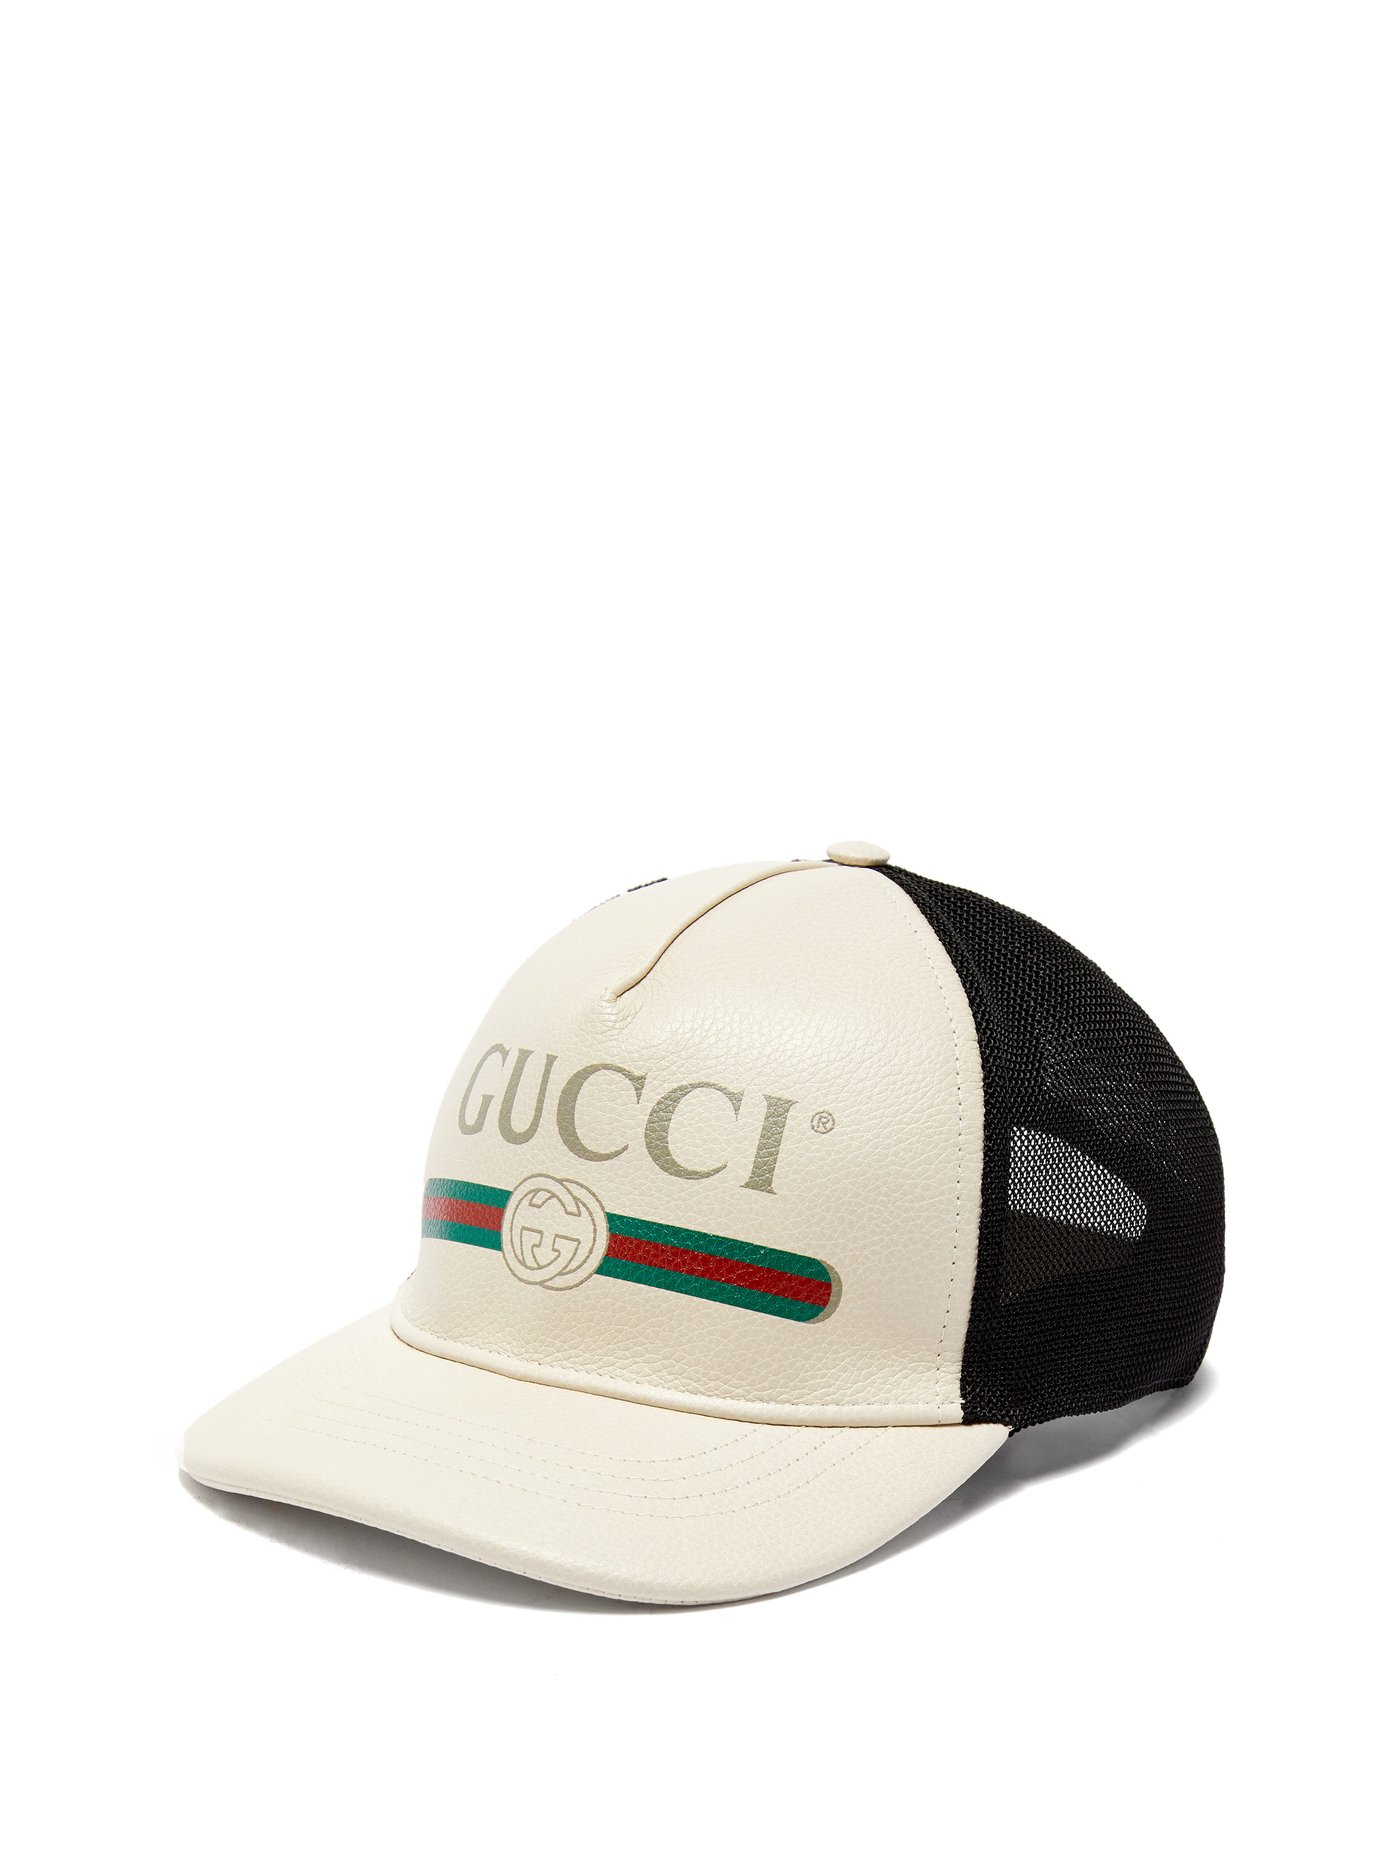 Gucci Baseball Cap Size Chart